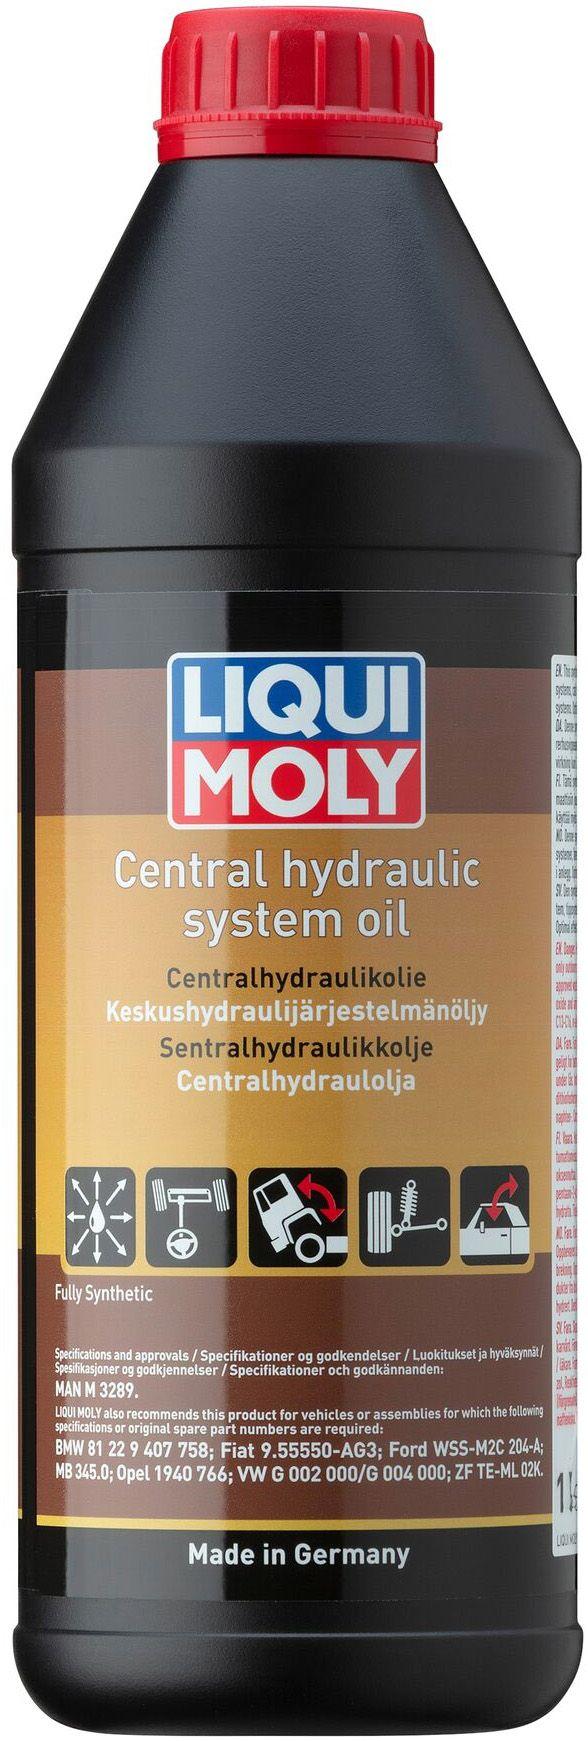 Гидравлическая жидкость Liqui Moly Zentralhydraulik-Oil, 1литр (3978)